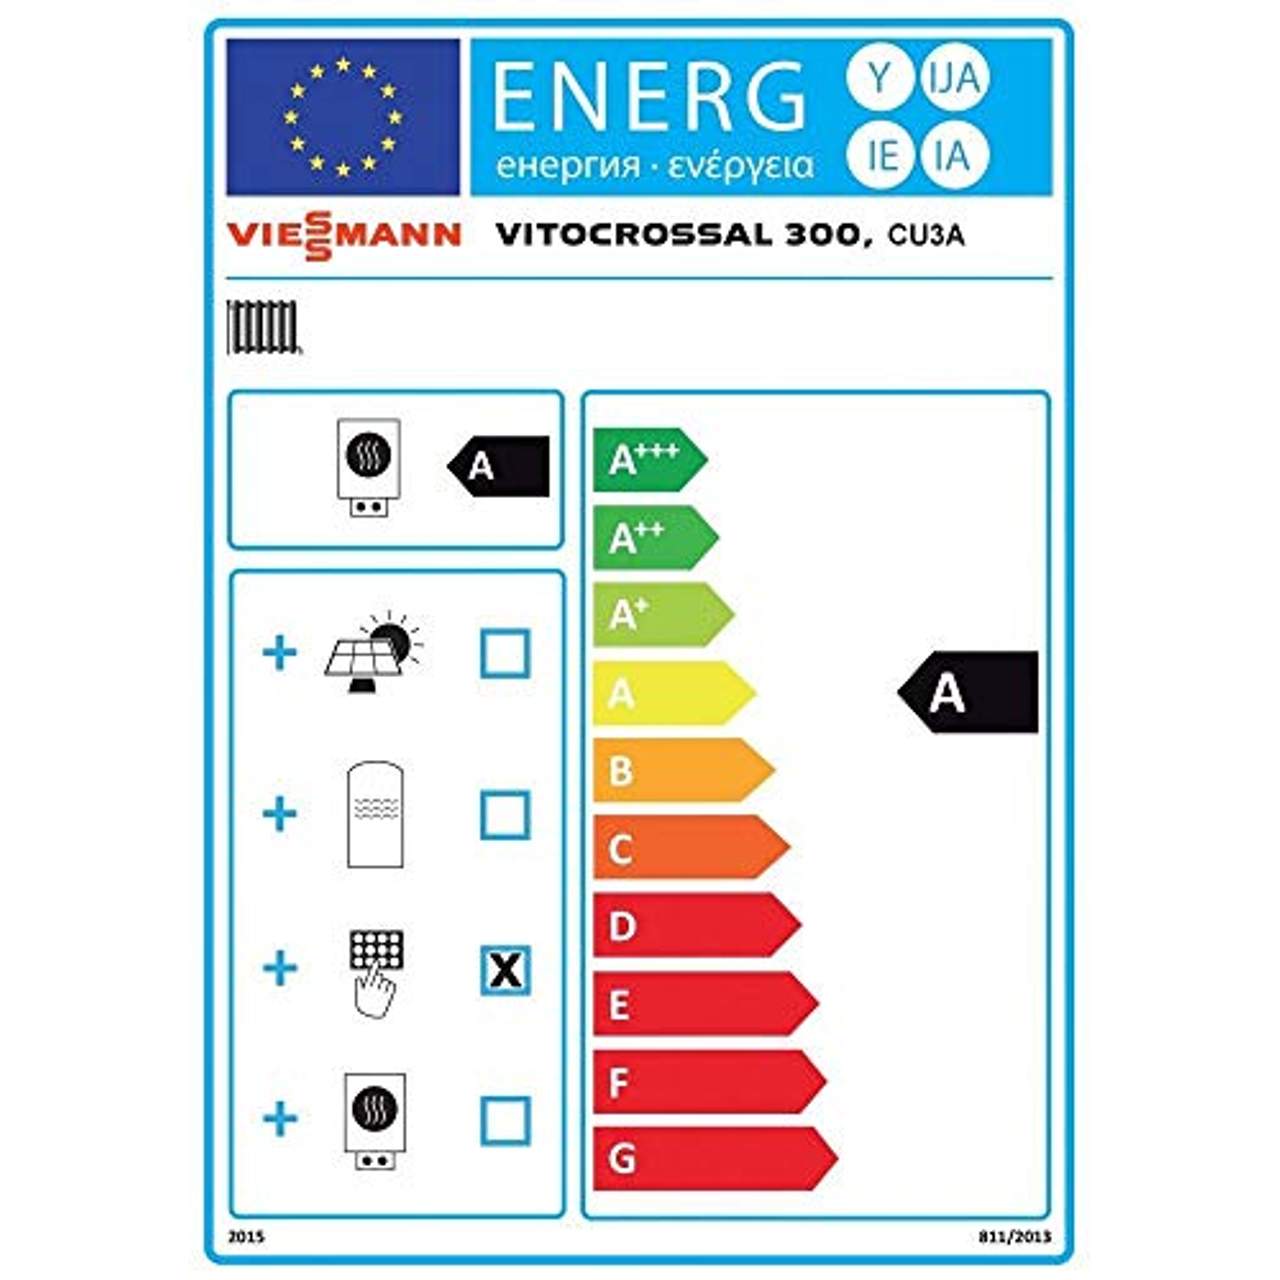 Viessmann Paket Vitocrossal 300 26 kW Gas Brennwert Kessel Speicher Vitocell